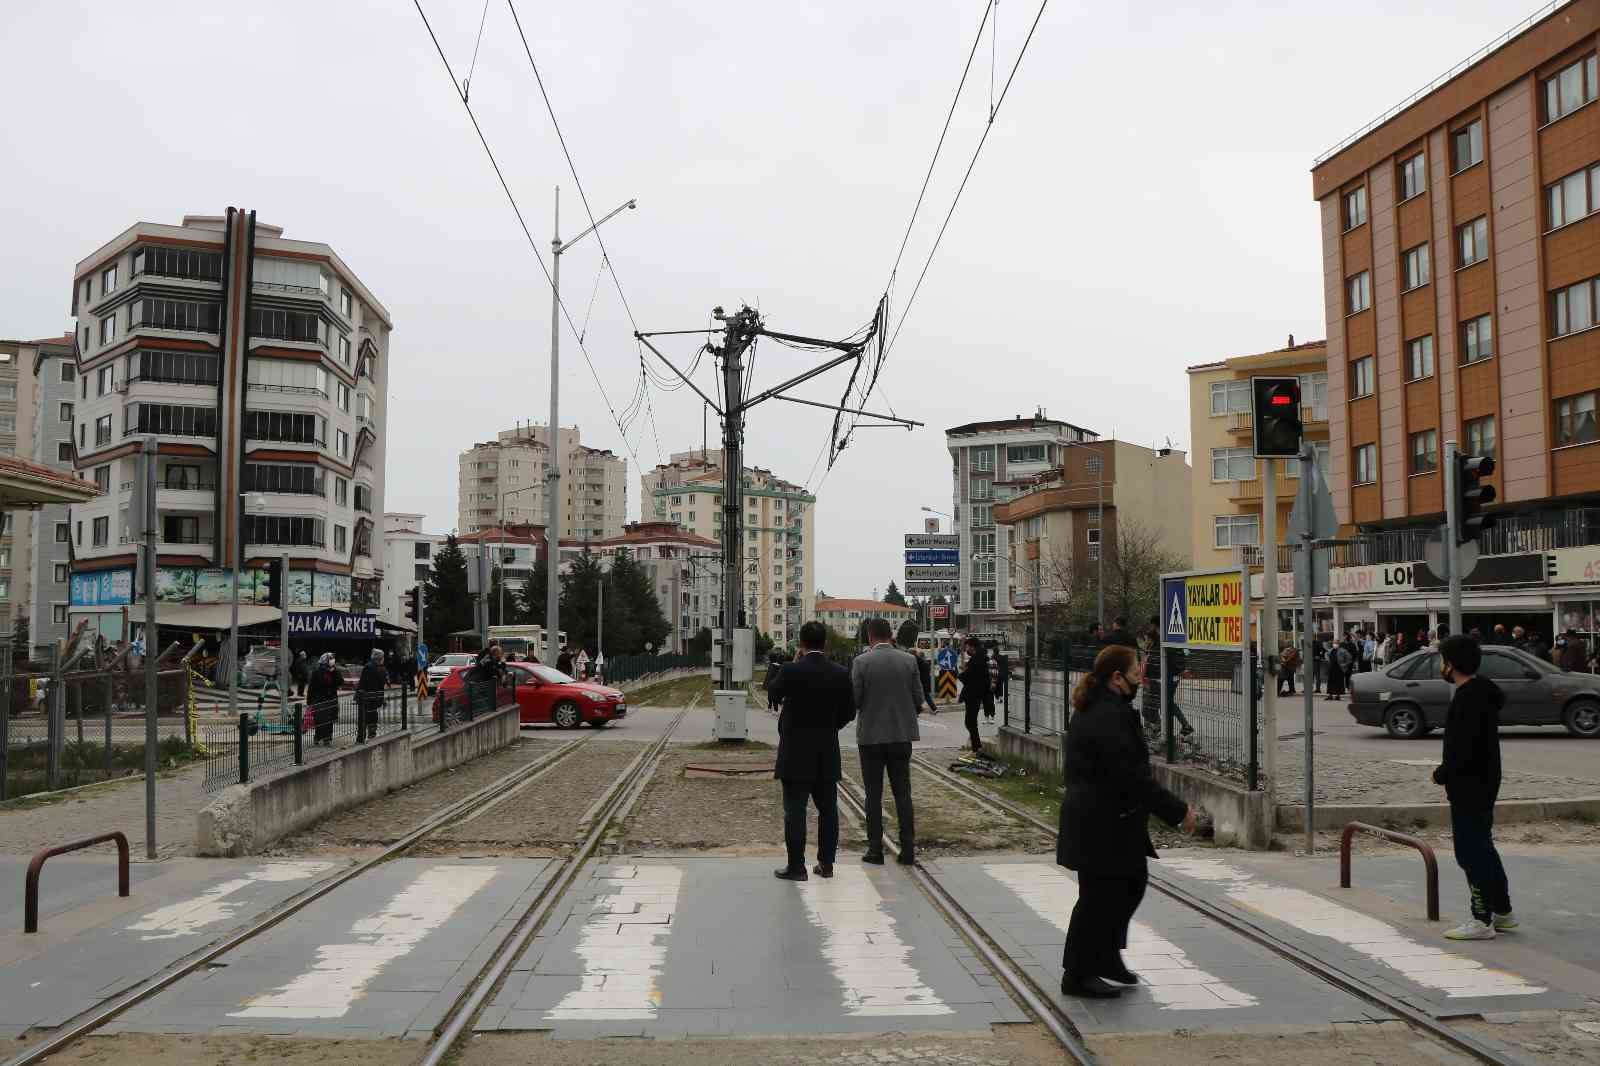 Vinç tramvay hattının elektrik telini kopardı, seferler aksadı
